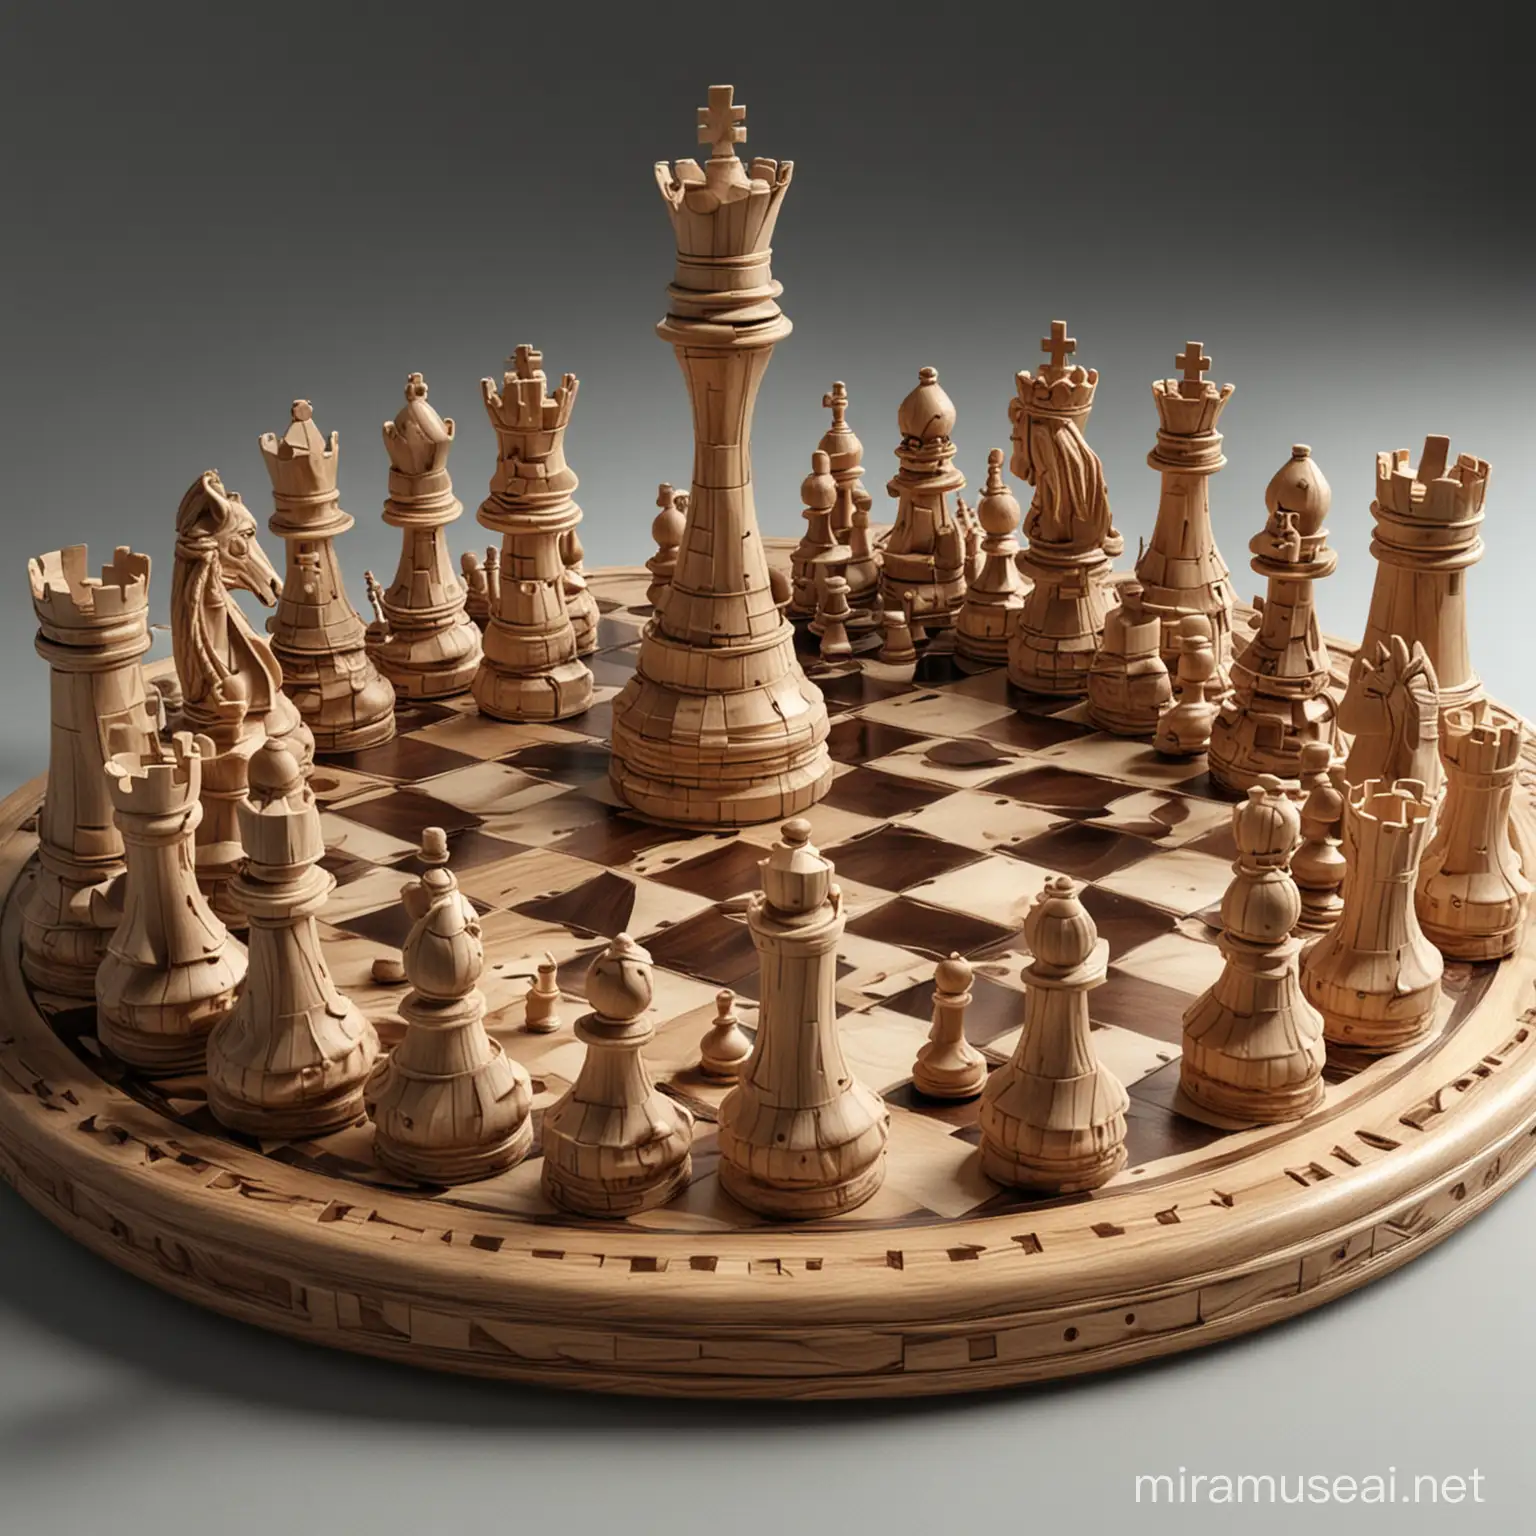 Futuristic 3D Chess Artwork Intricate Strategy in Digital Space